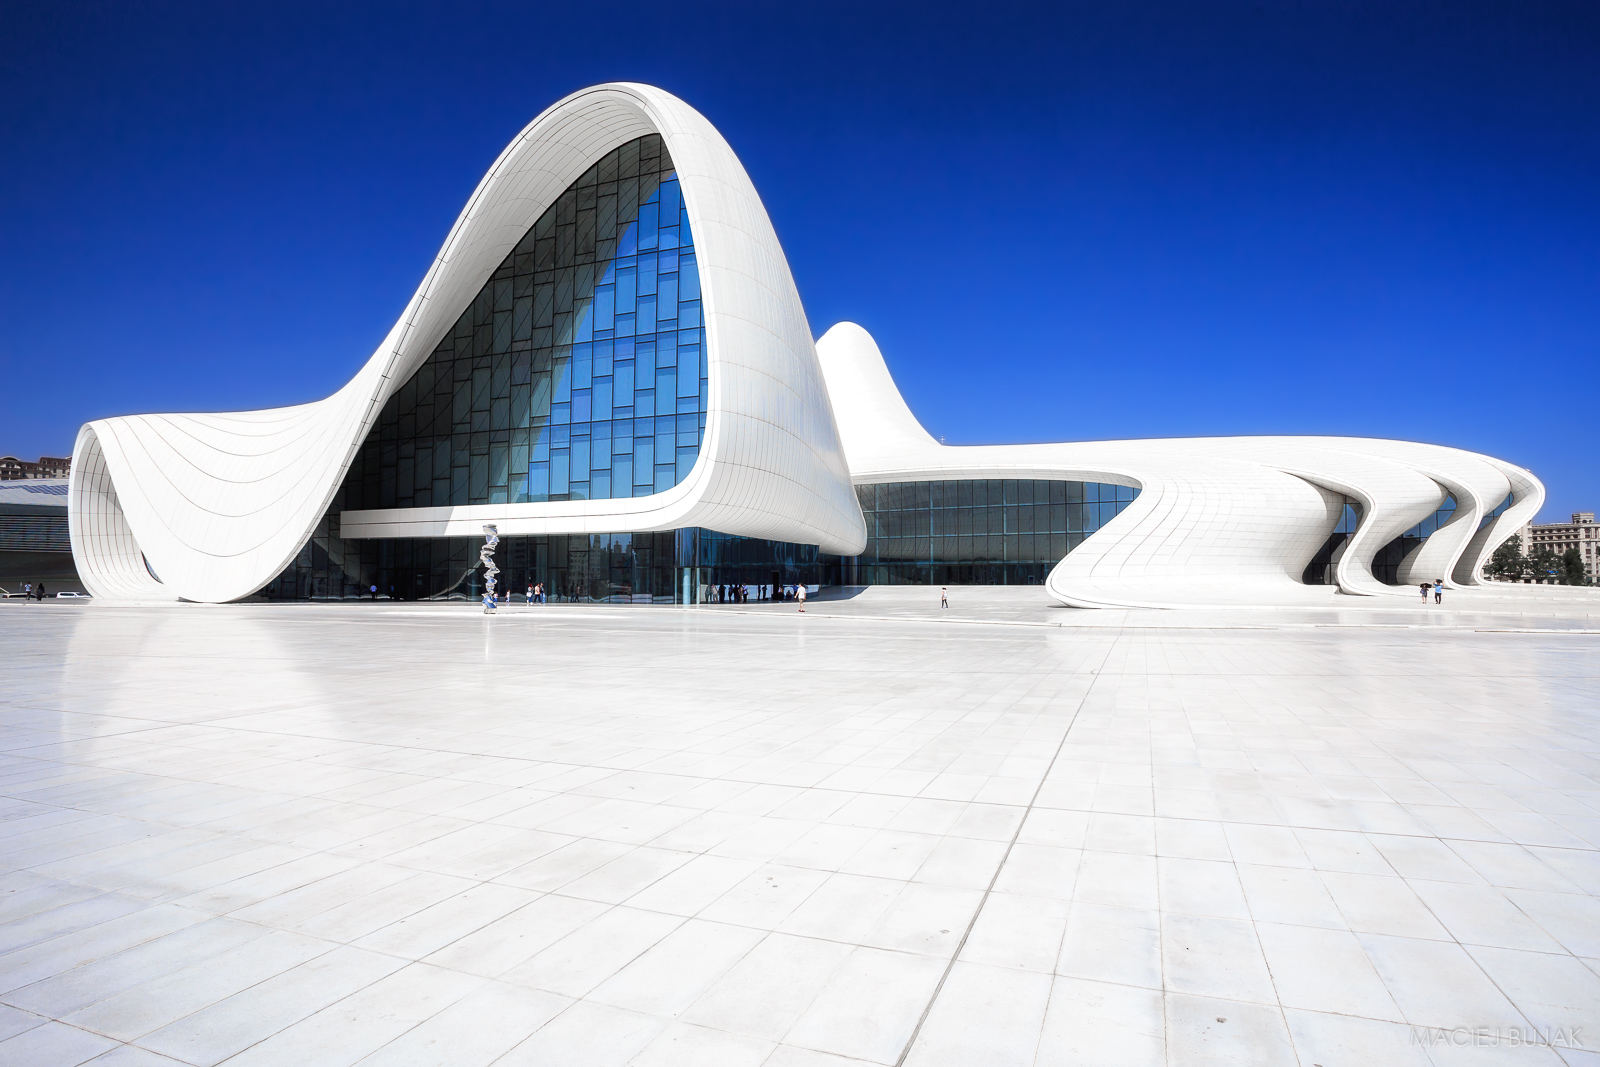 Heydar Aliyev Center, Baku, Azerbaijan